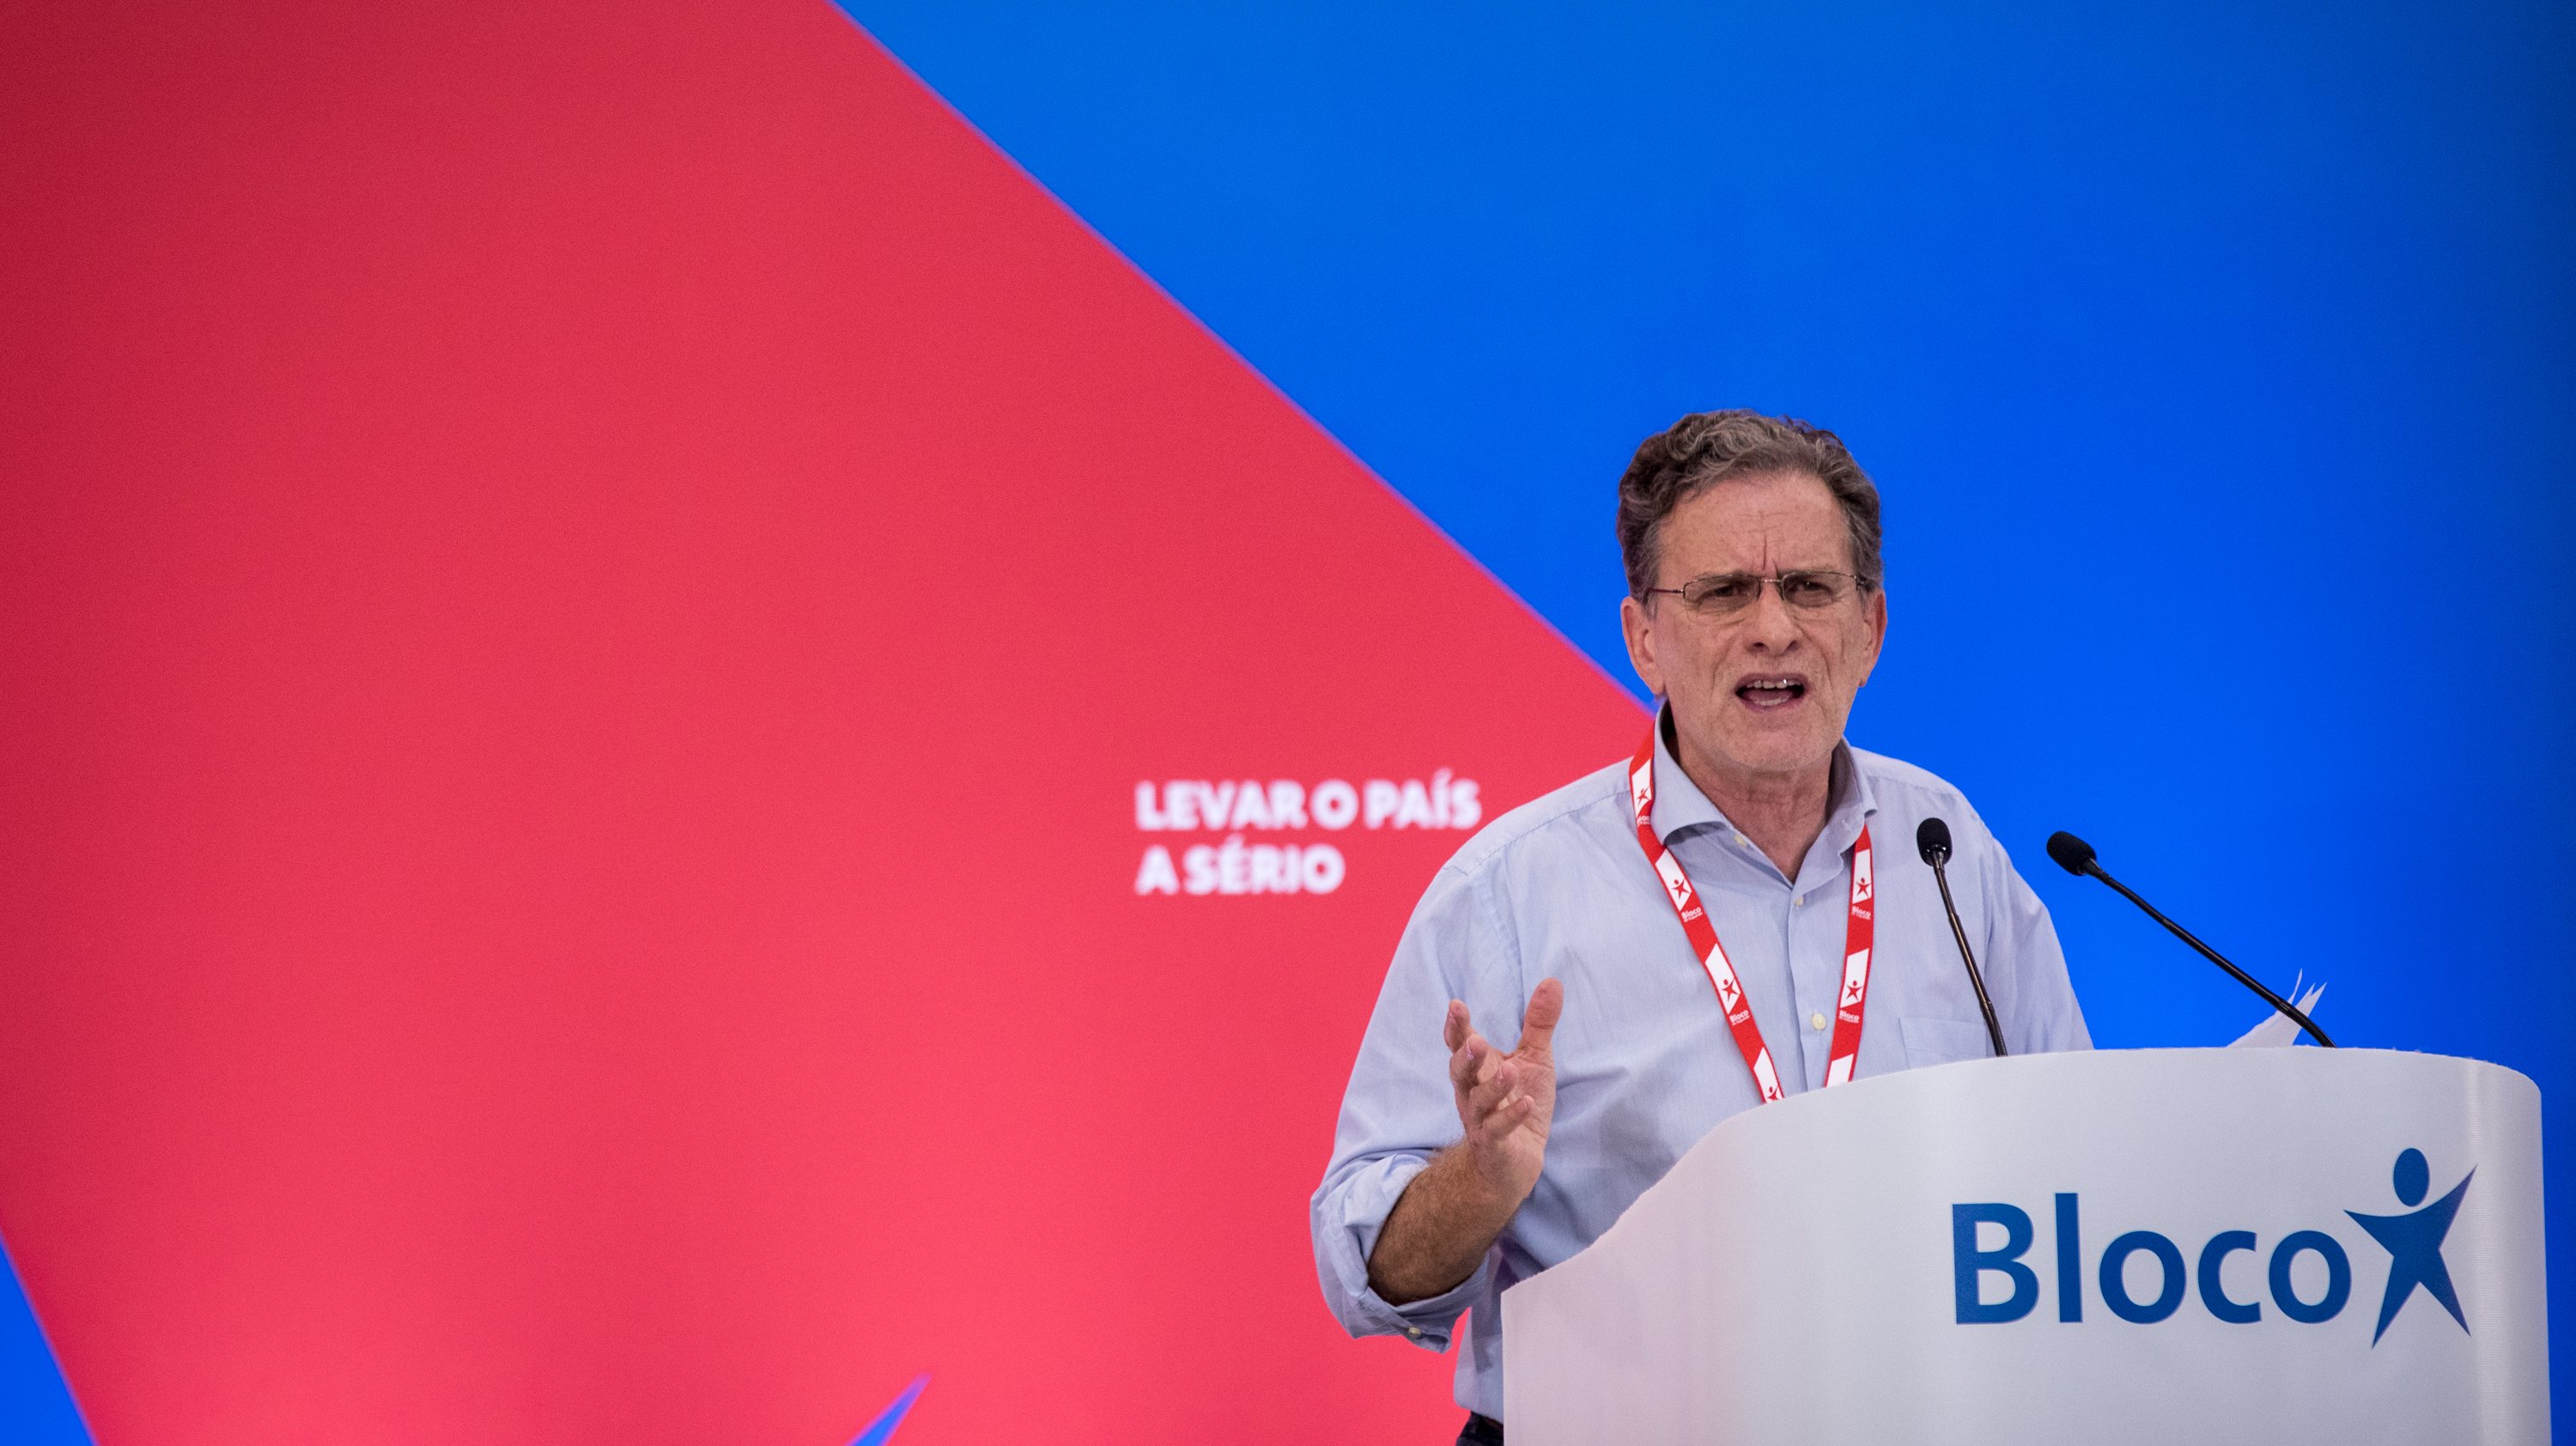 Pedro Soares é candidato à liderança do Bloco de Esquerda